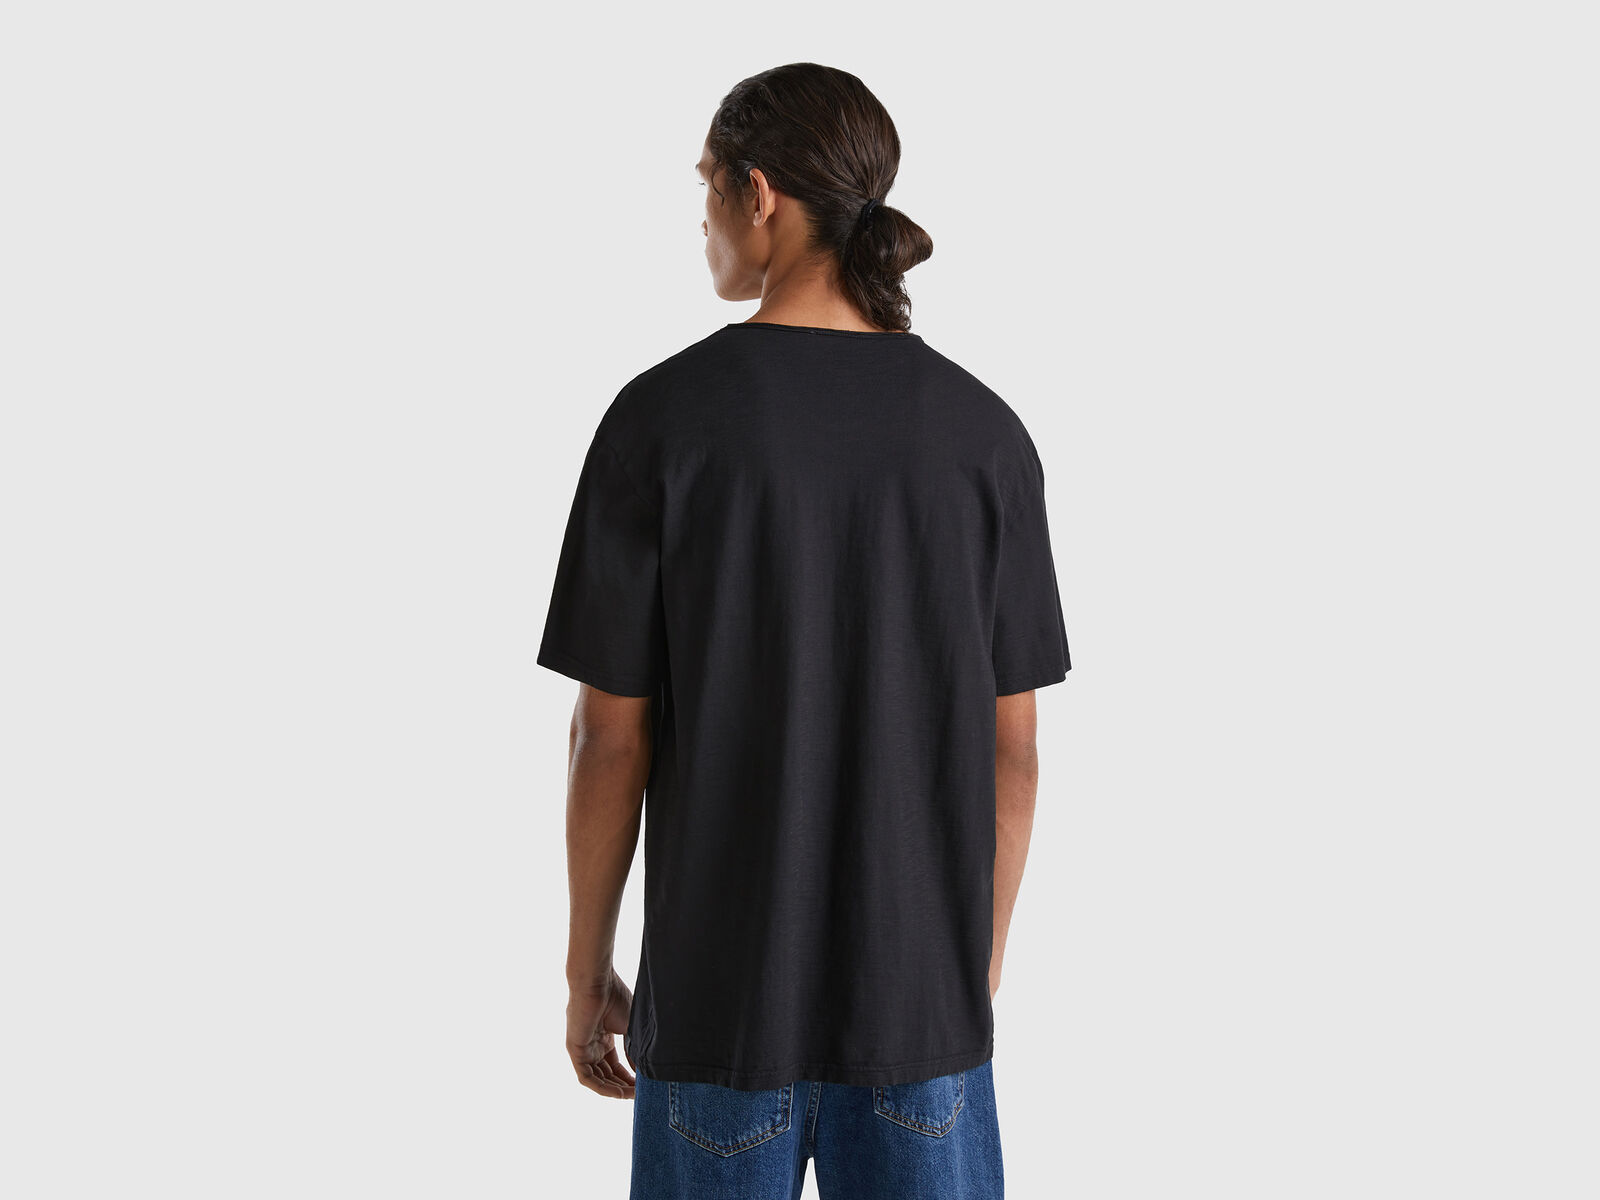 | in 100% cotton Benetton - V-neck Black t-shirt